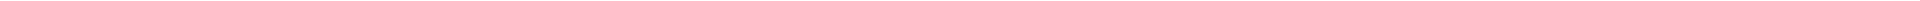 Детская стоматология в Алматы, Астане (Нур-Султан), Усть-Каменогорске, Атырау, Уральск, Кокшетау в Казахстане, фото 17